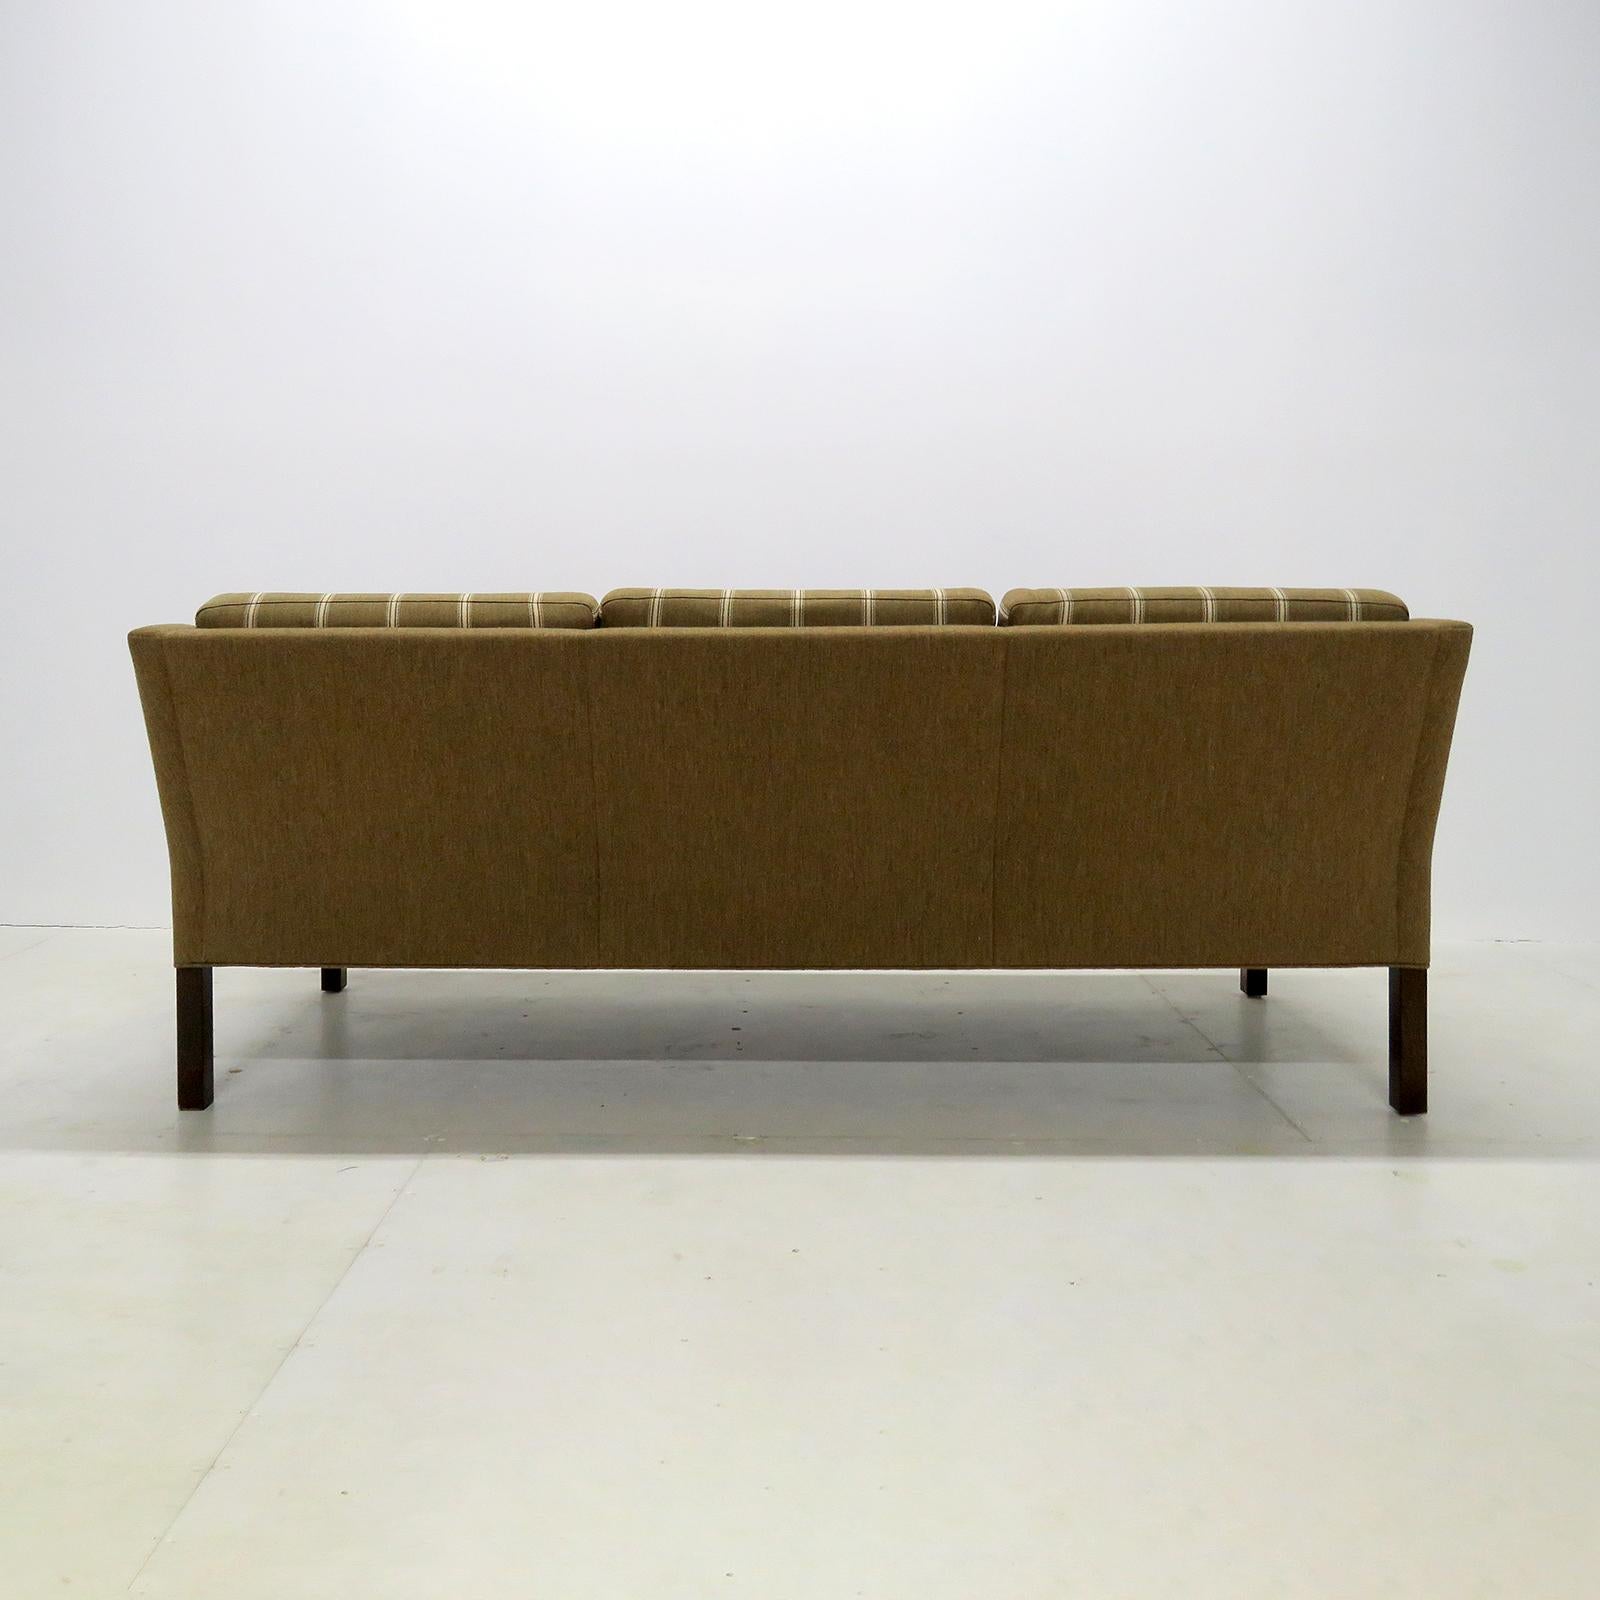 Børge Mogensen Modell #2223 Dreisitziges Sofa, 1960 (Wolle)